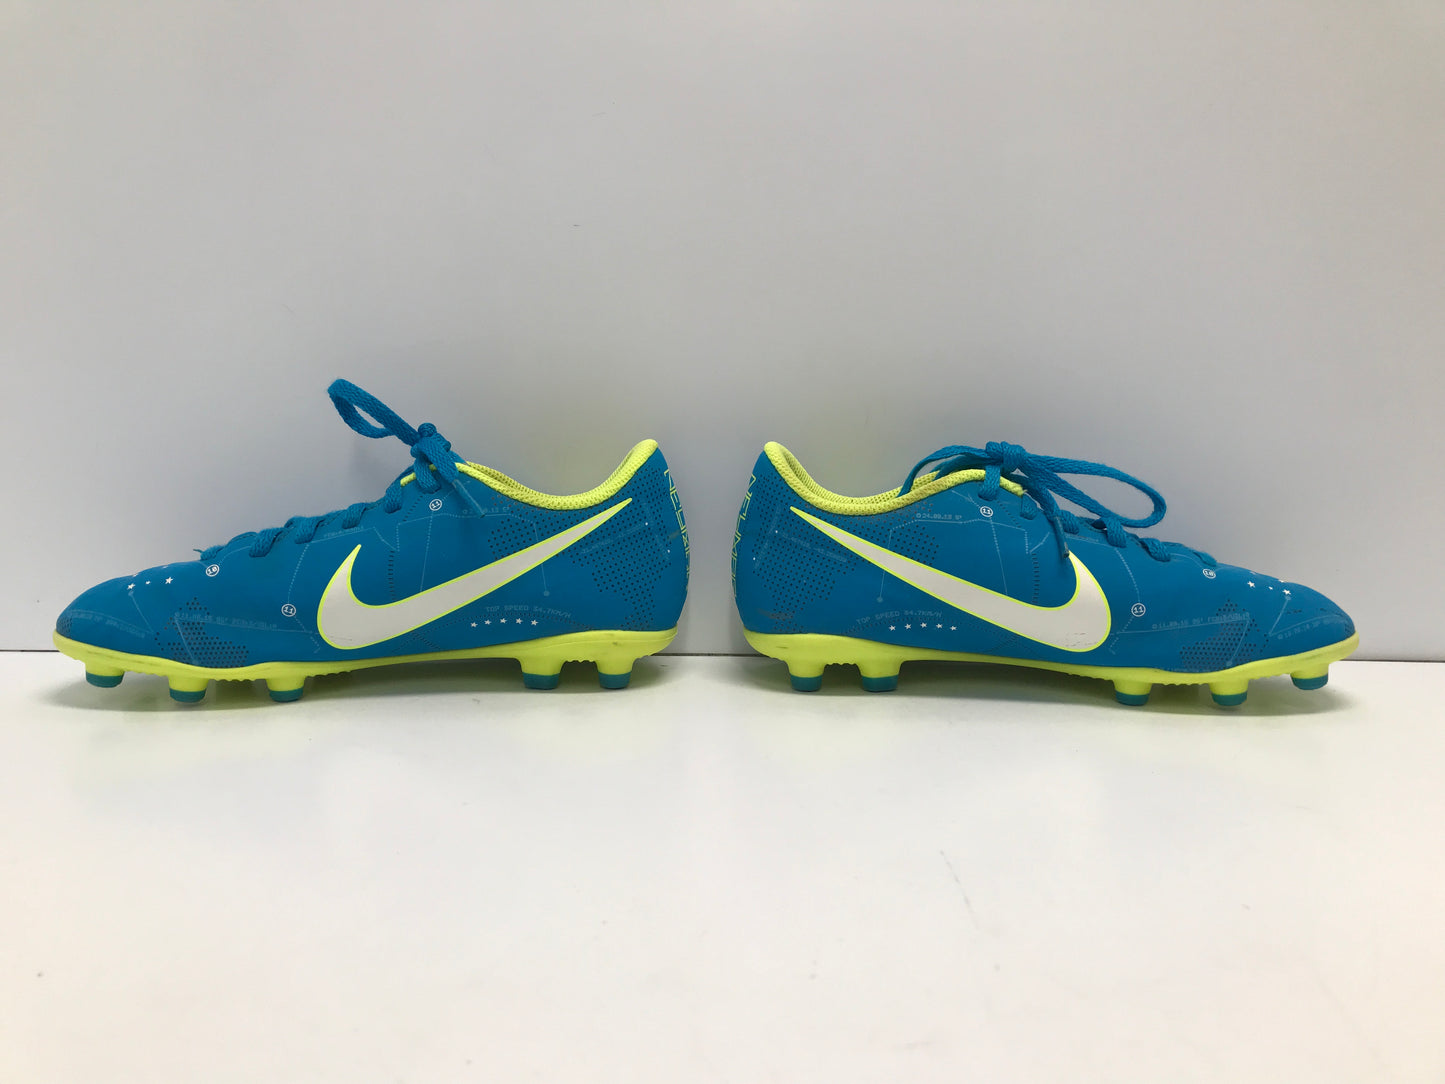 Soccer Shoes Cleats Child Size 3 Nike Mercurial Blue Lemon